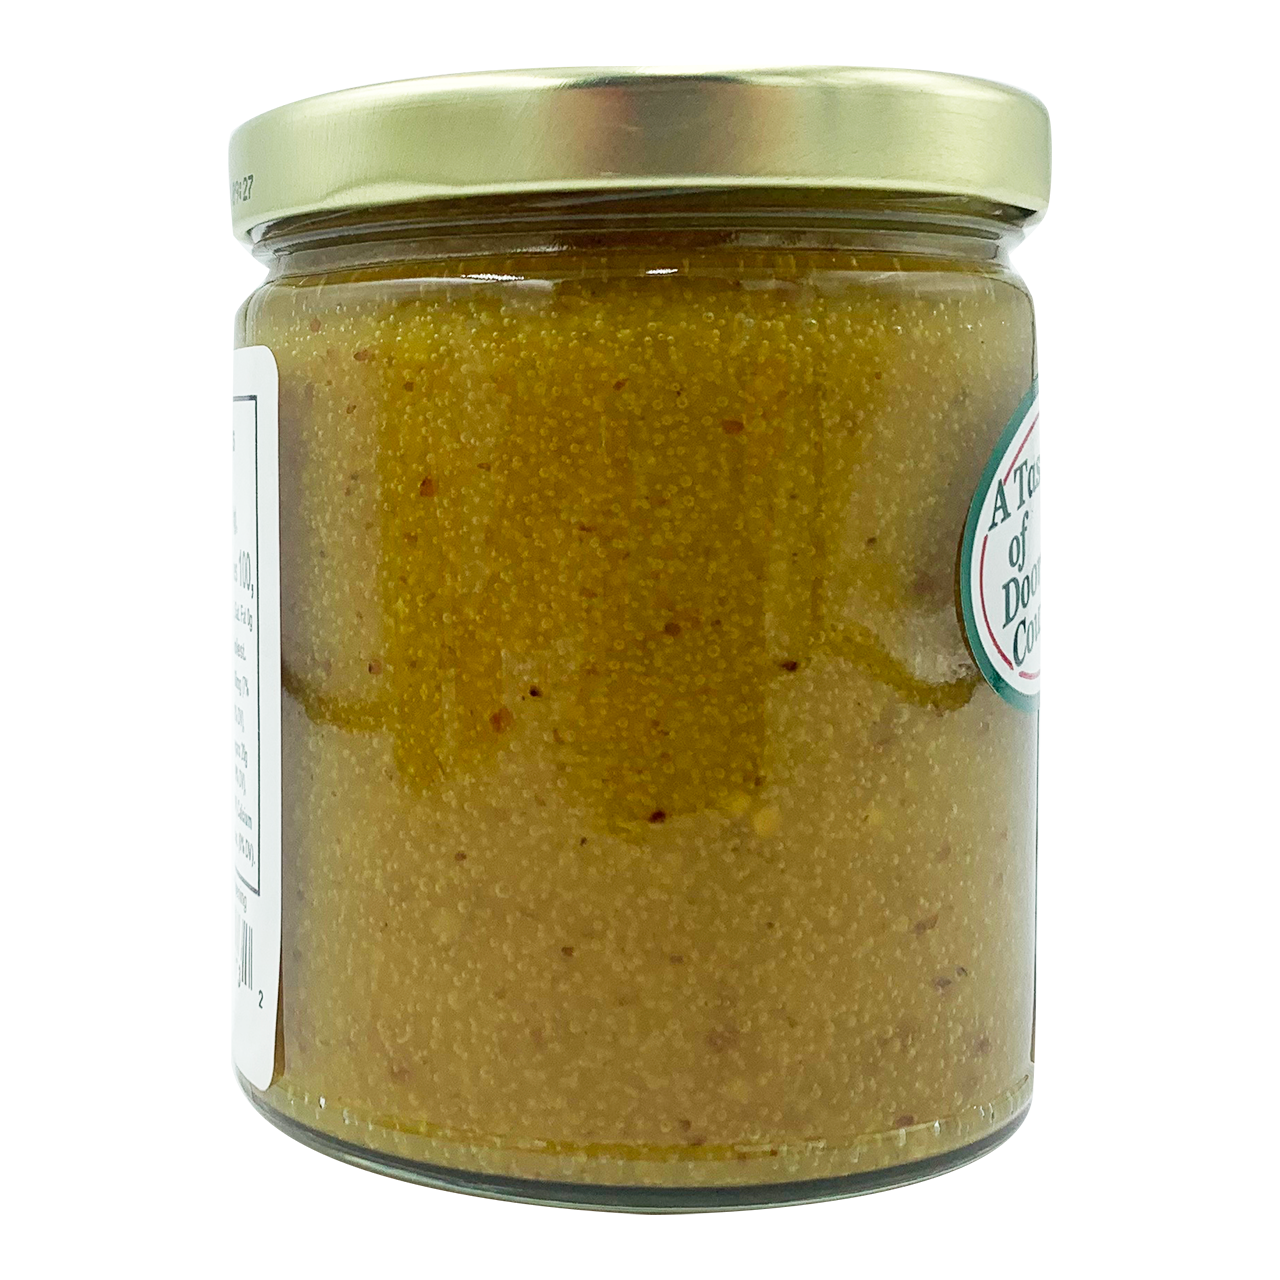 Honey Mustard Pretzel Dip